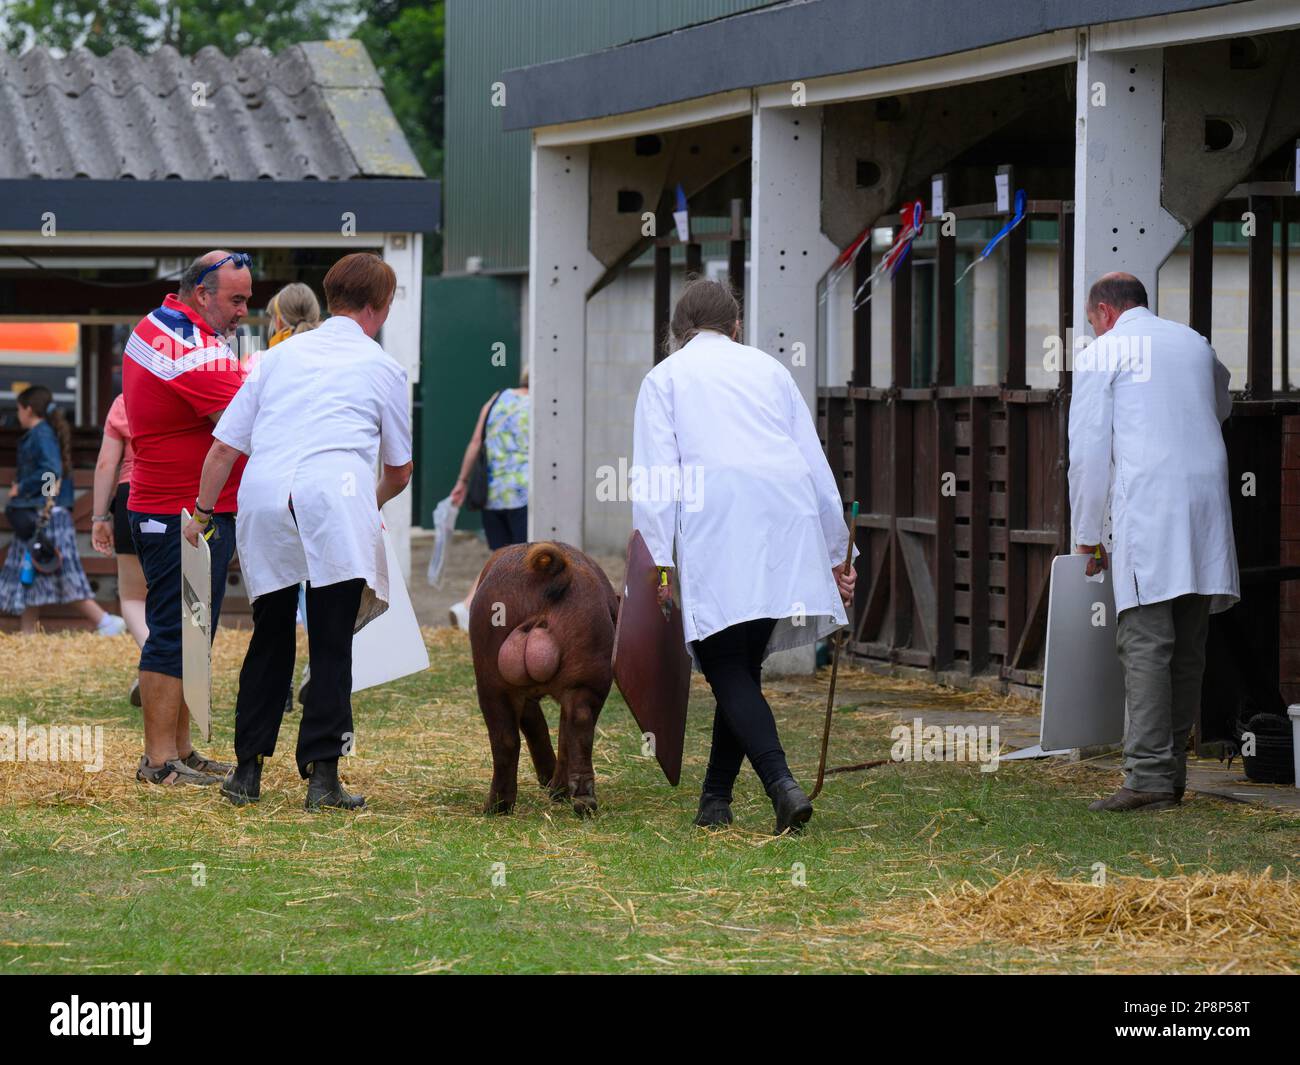 Cochon domestique de Duroc brun pédigrée (1 un sanglier) guidé par des fermiers portant des manteaux blancs - Great Yorkshire Show 2022, Harrogate, Angleterre, Royaume-Uni. Banque D'Images